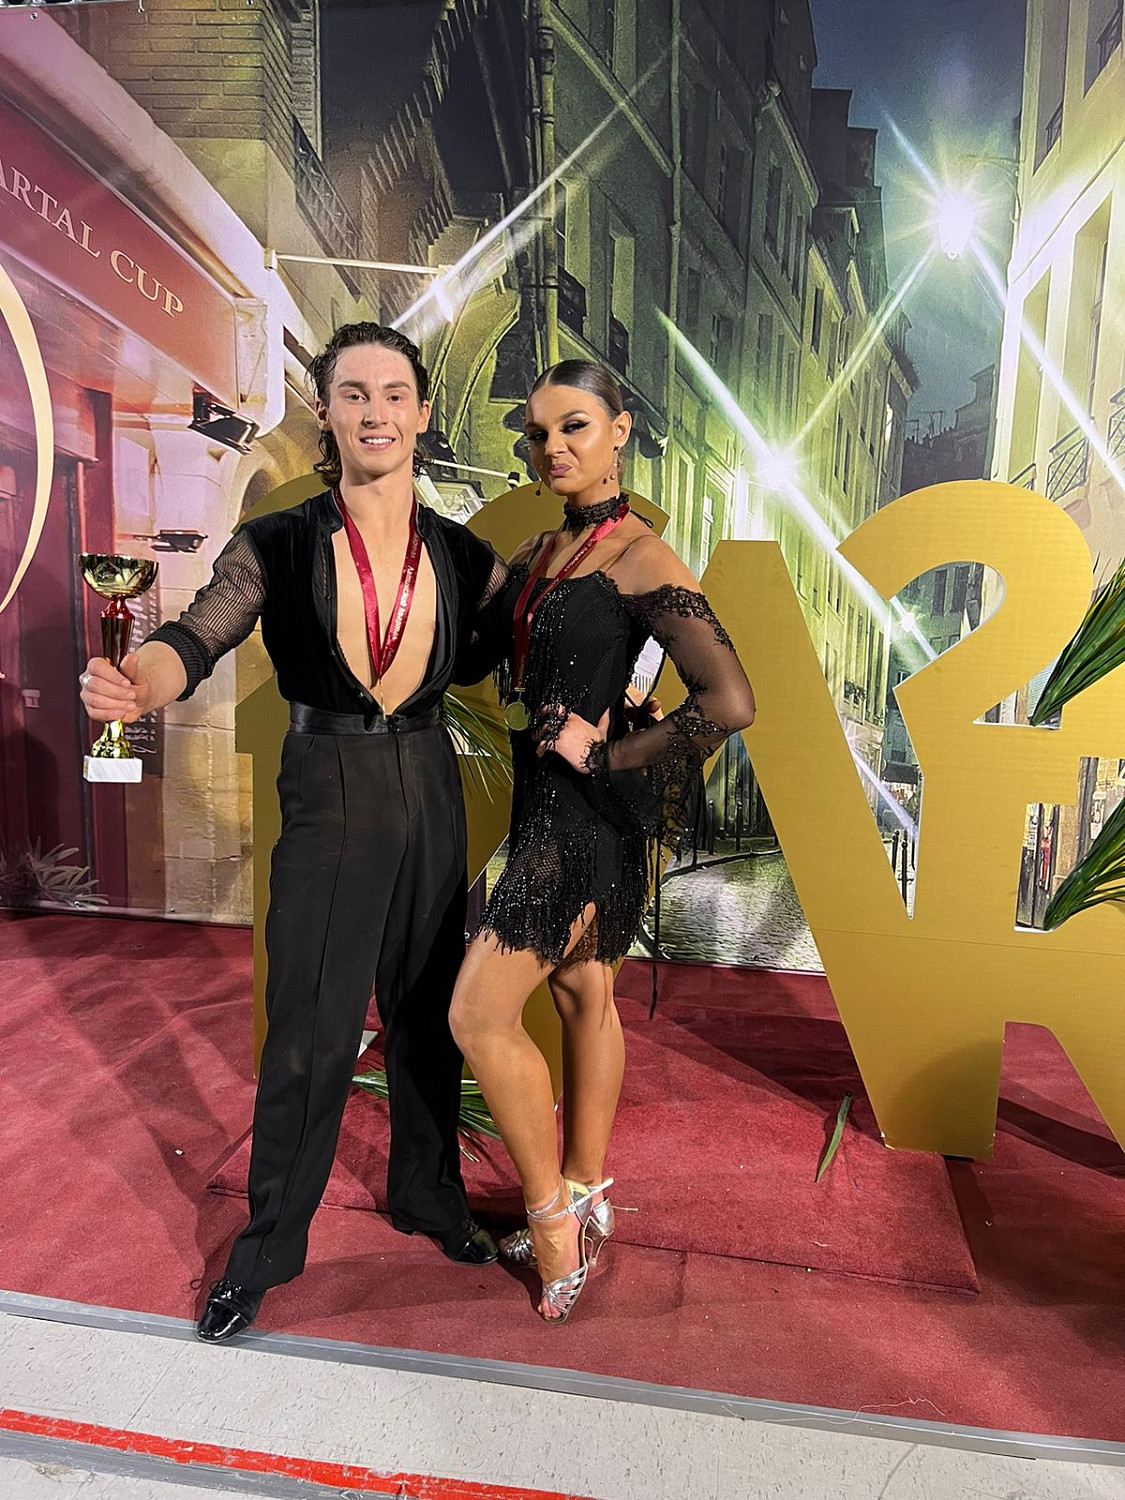 Спортсмены танцевального клуба «Звёздный вальс» завоевали свыше 20 наград на Всероссийских соревнованиях